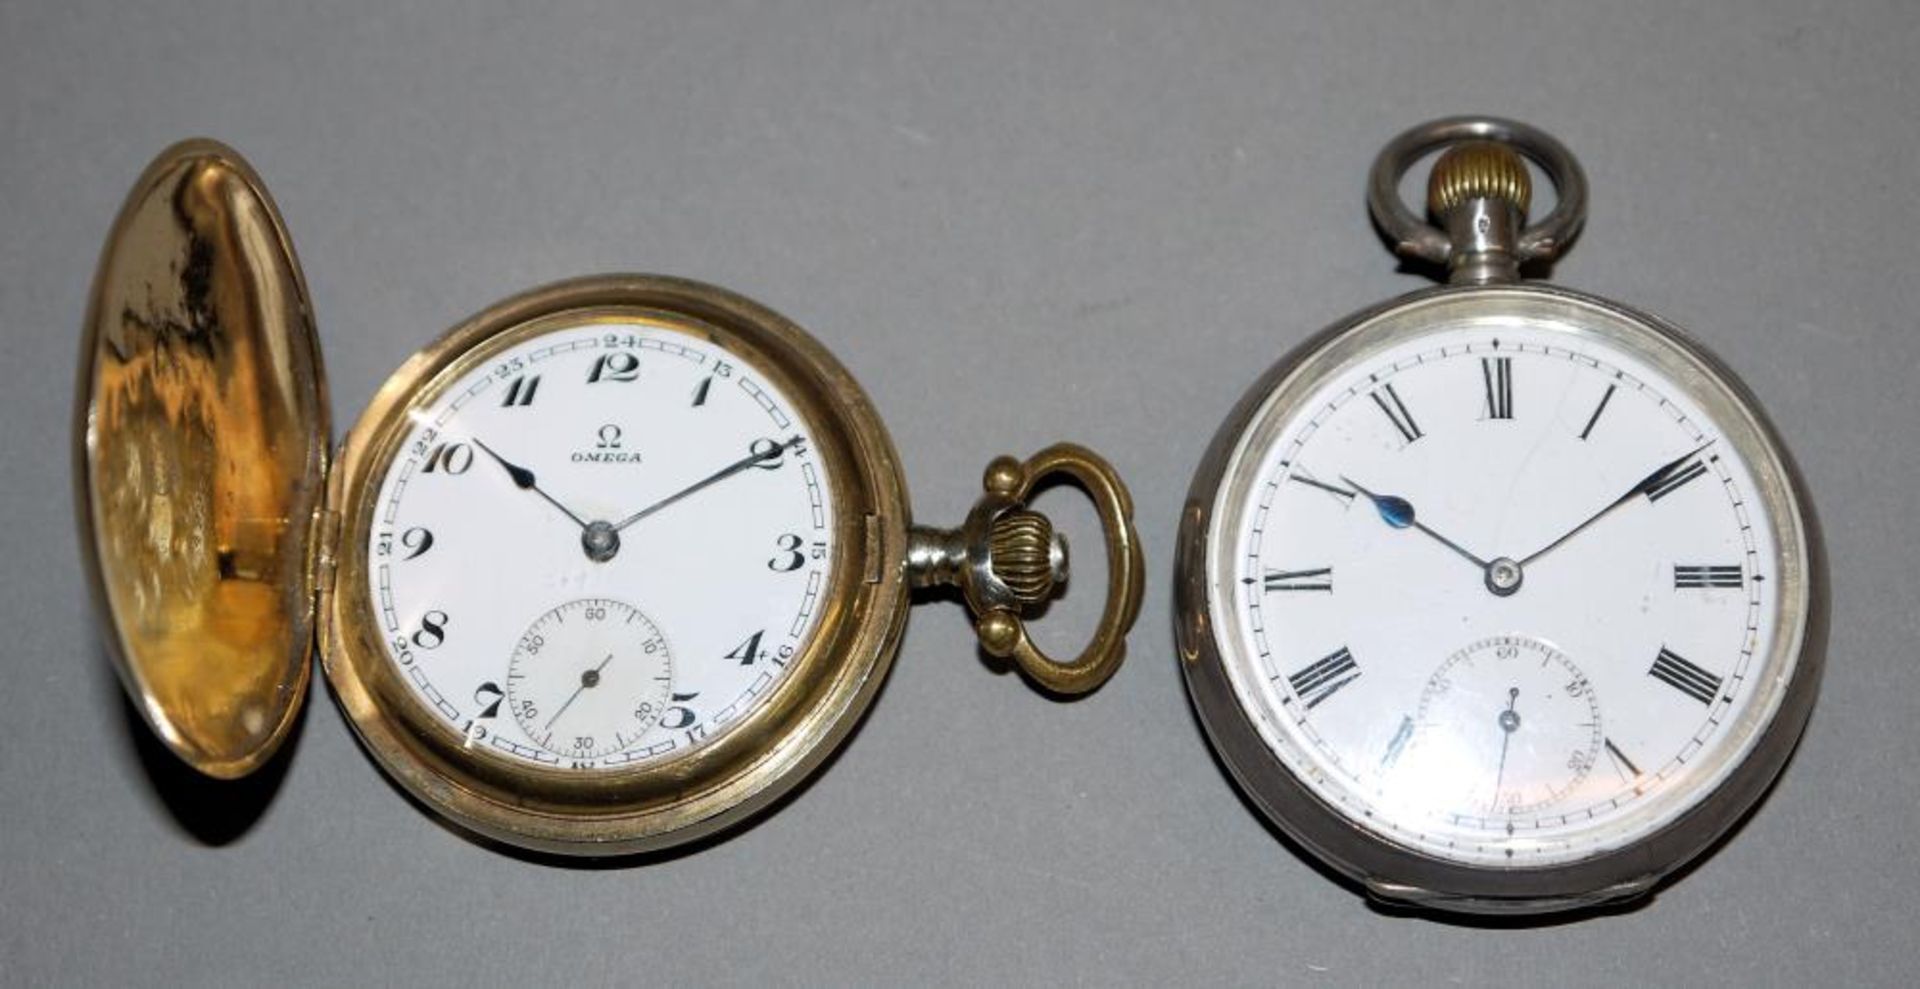 Zwei Omega-Taschenuhren um 1910/20 Savonette mit Sprungdeckel-Gehäuse in Golddoublé, Dekor etwas